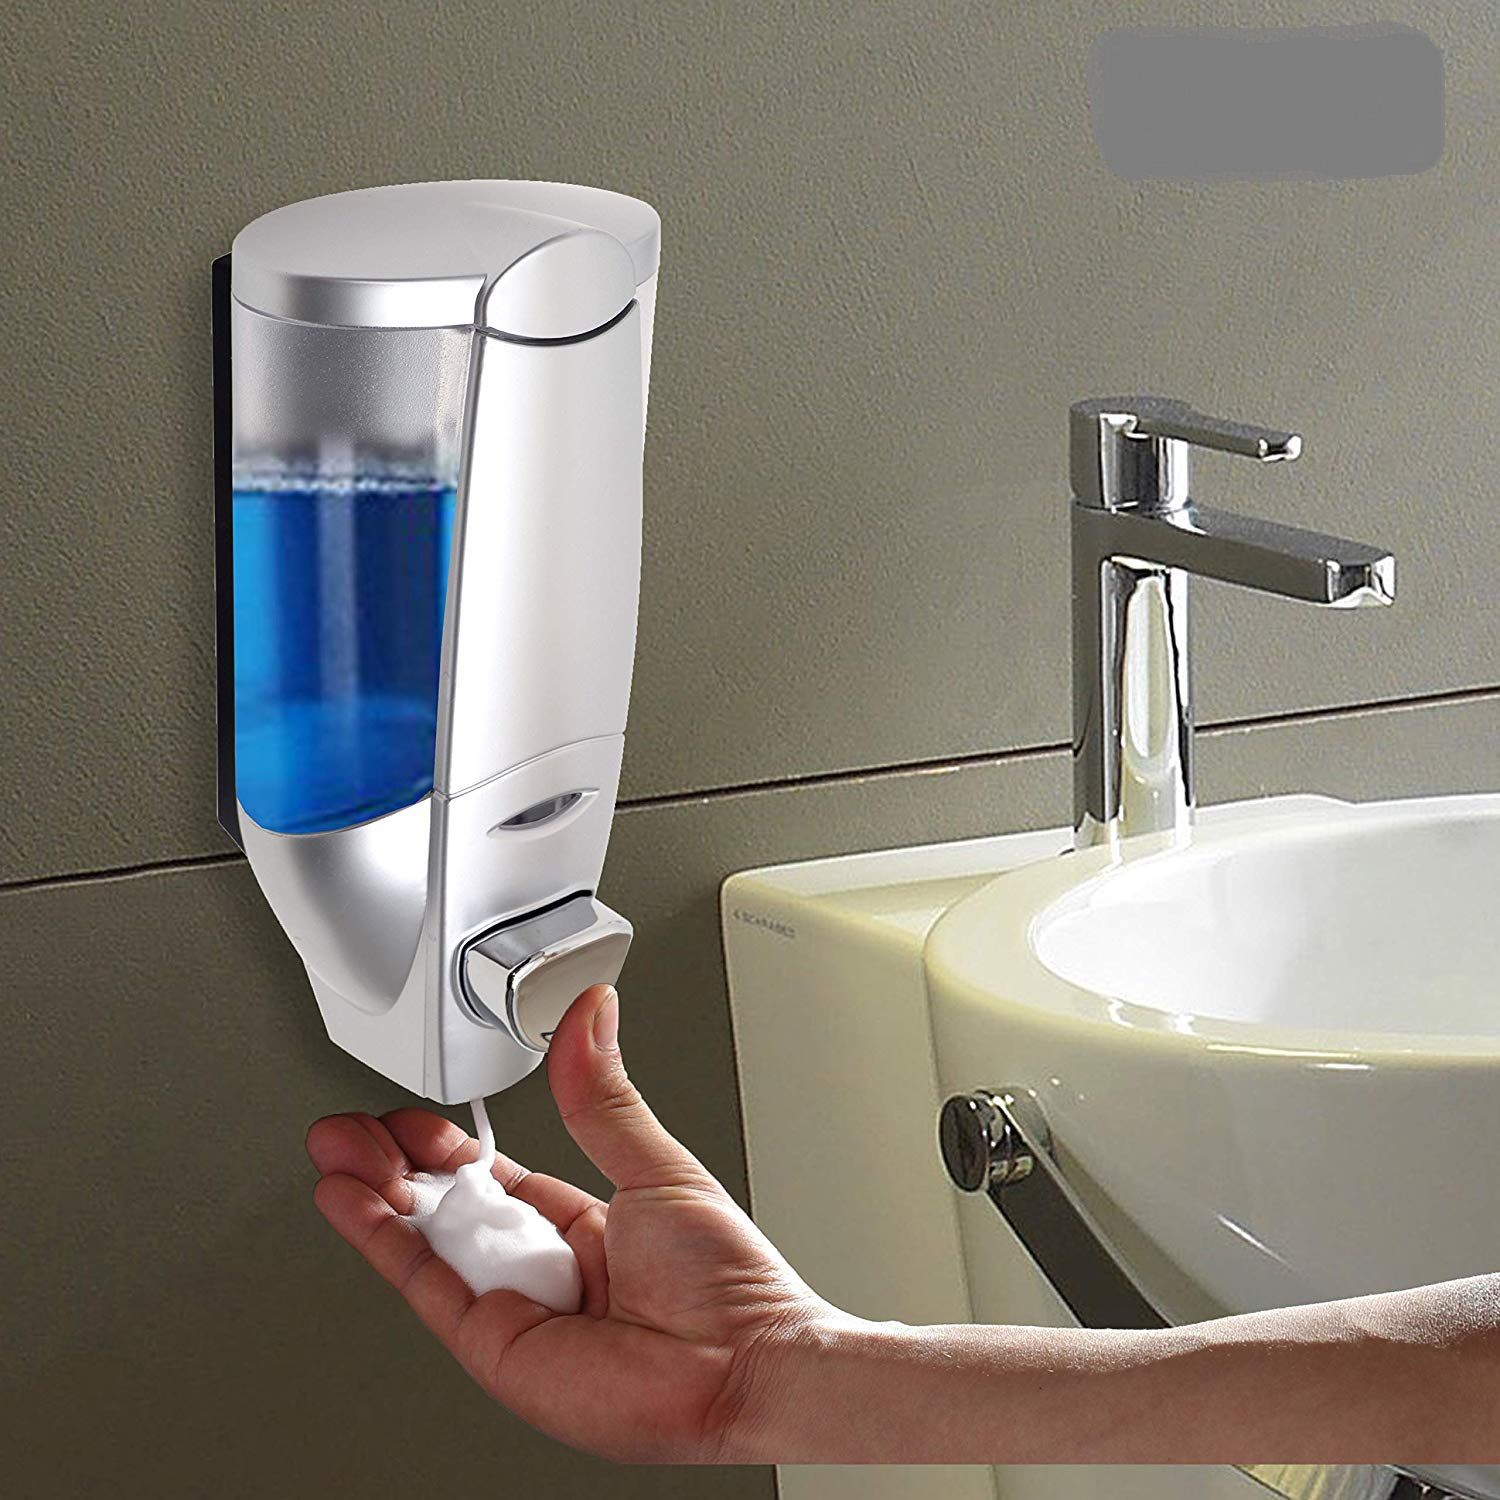 Buy Clean Magic Bathroom Wall Mounted Liquid Soap/Shampoo Handwash